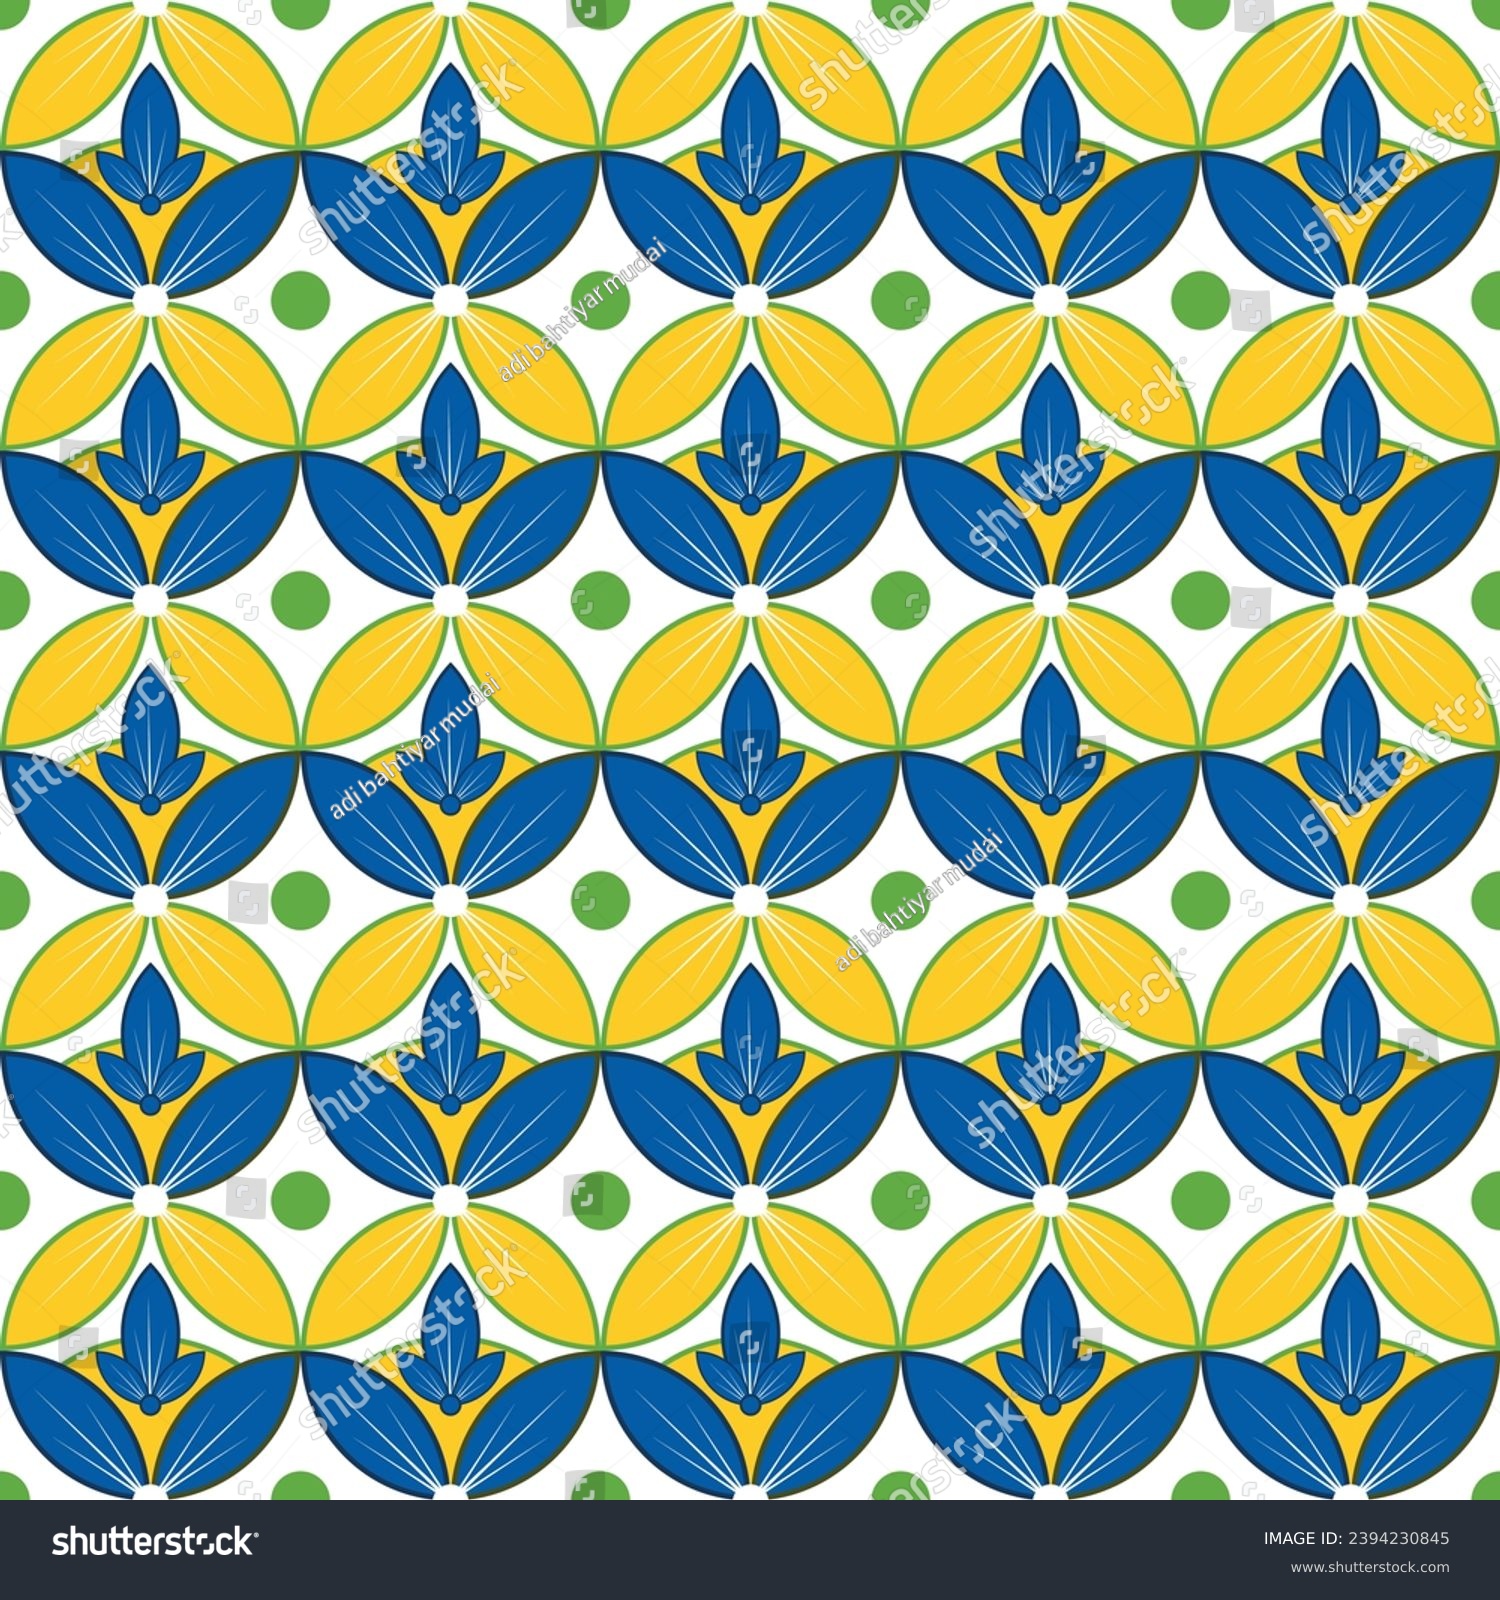 SVG of bati kawung jawa. background batik jawa. motif batik kawung jawa svg